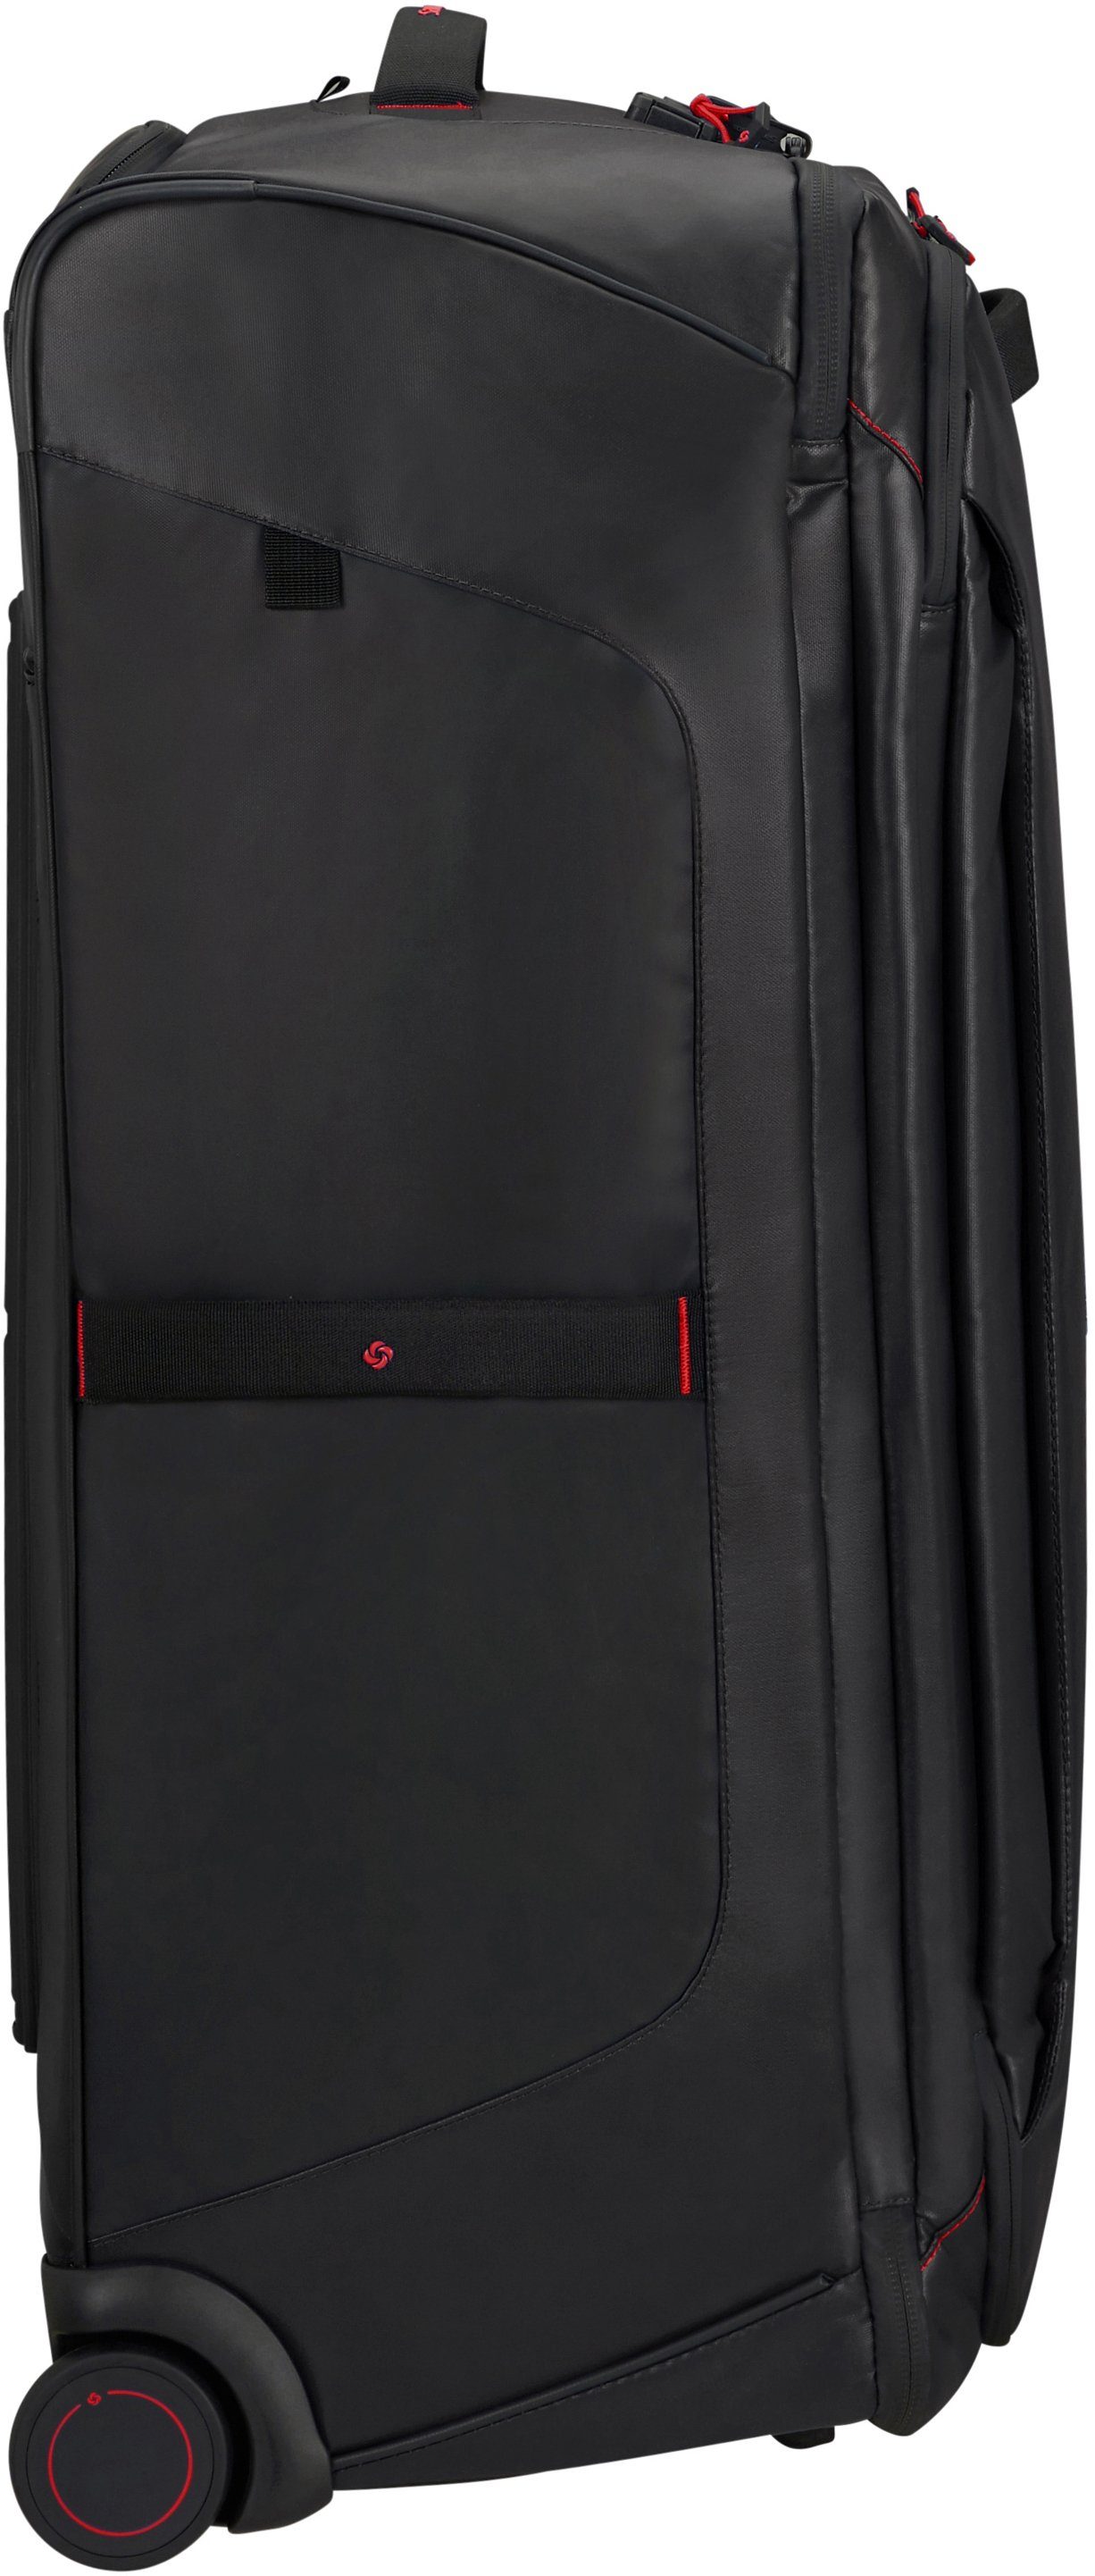 Samsonite Reisetasche Ecodiver, 79 cm, teilweise aus mit und recyceltem Material Rucksackfunktion; Black, Trolley